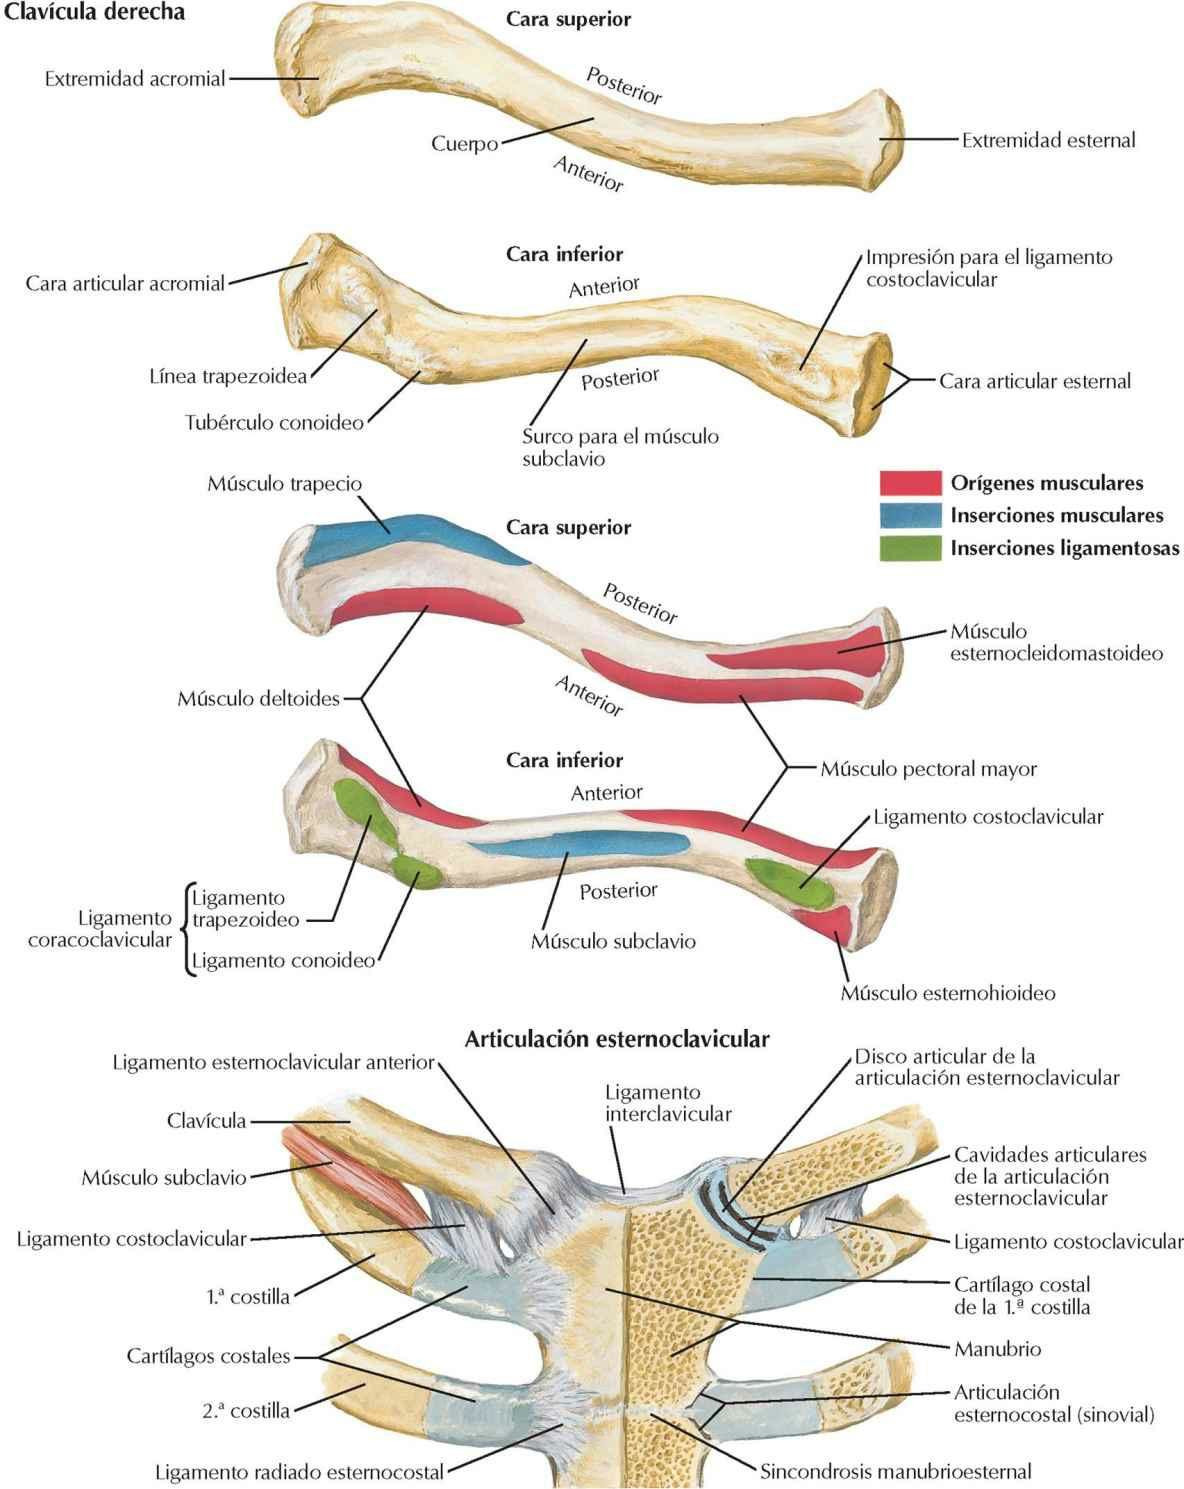 Clavícula y articulación esternoclavicular